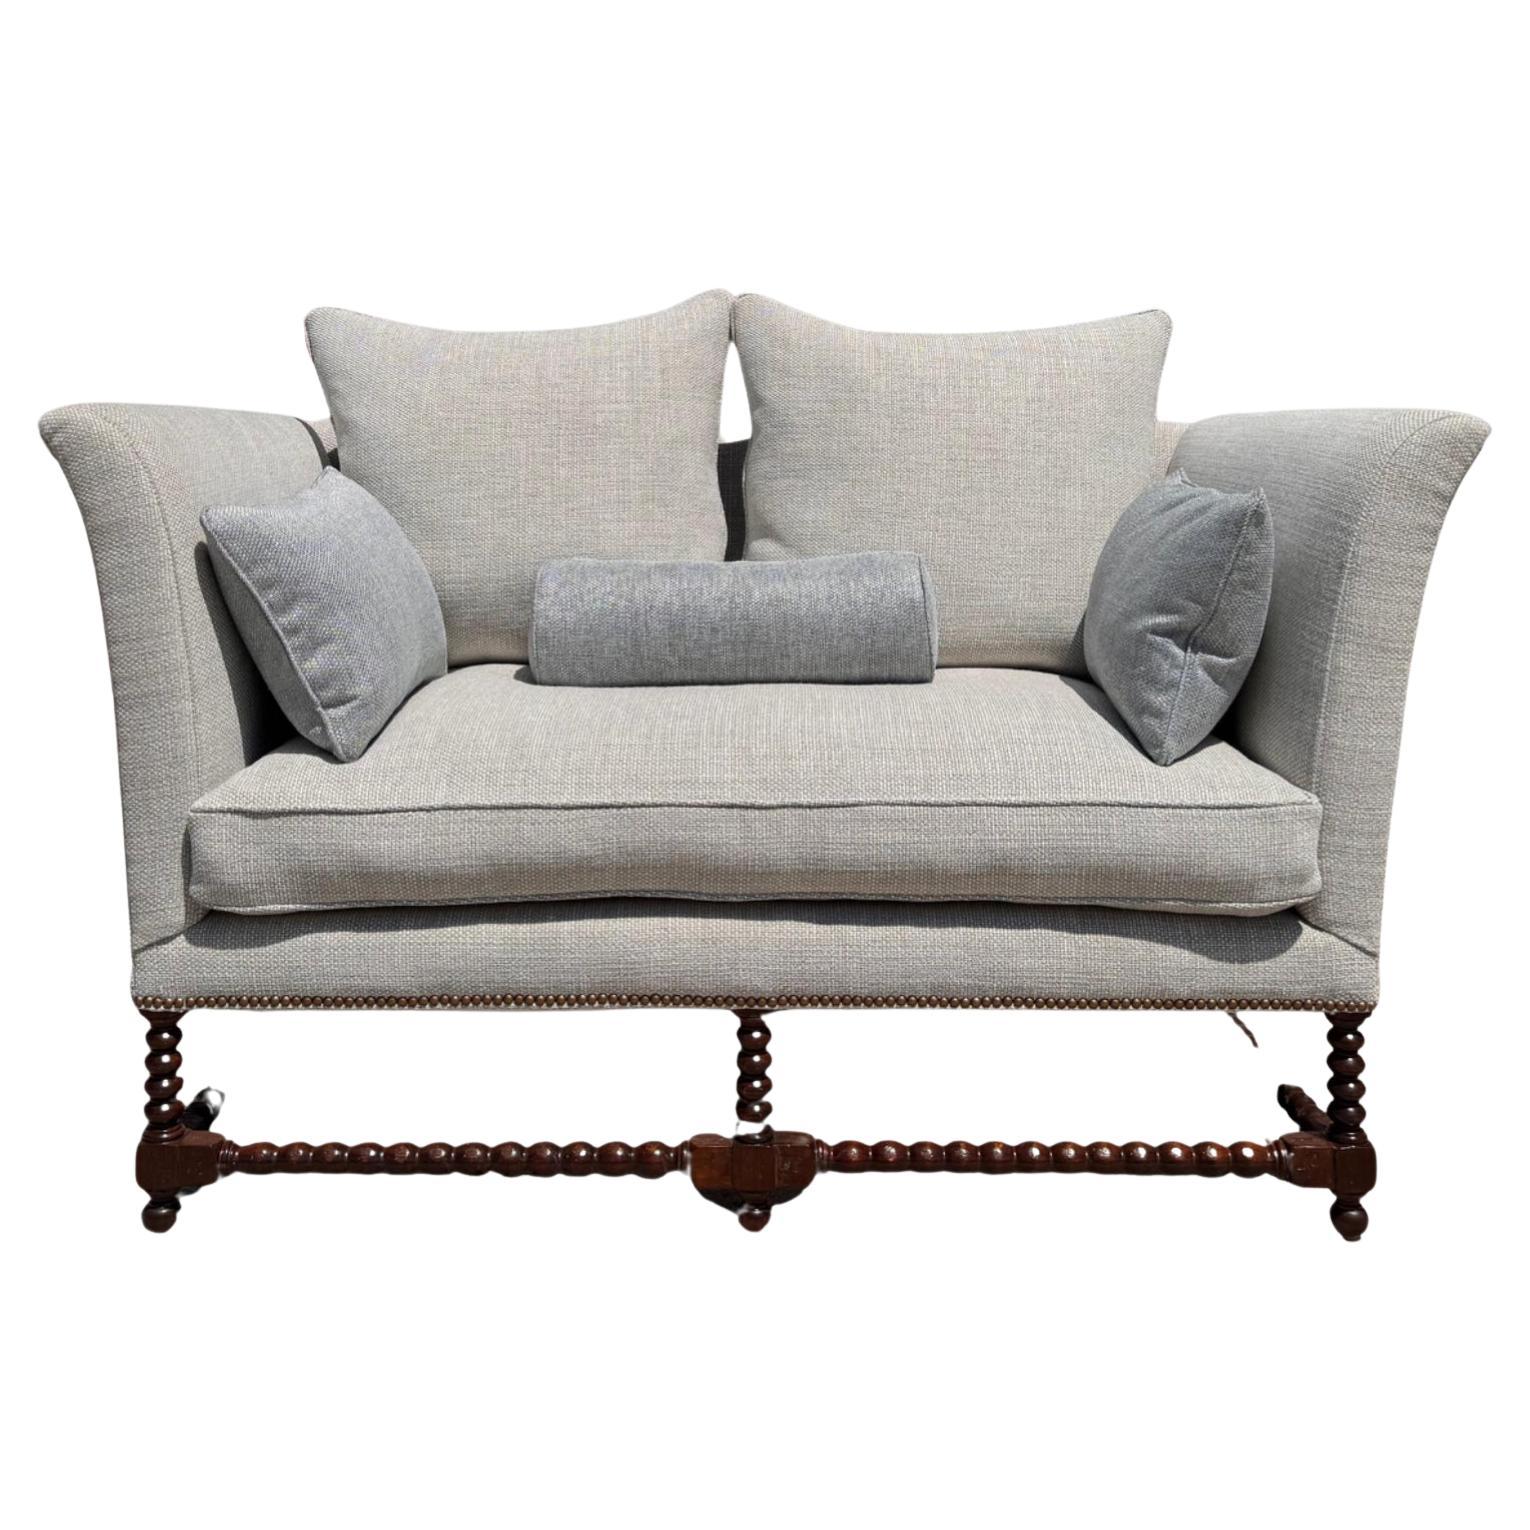 18th C Style Italian Walnut Down Sofa Settee by Randy Esada Designs For Sale